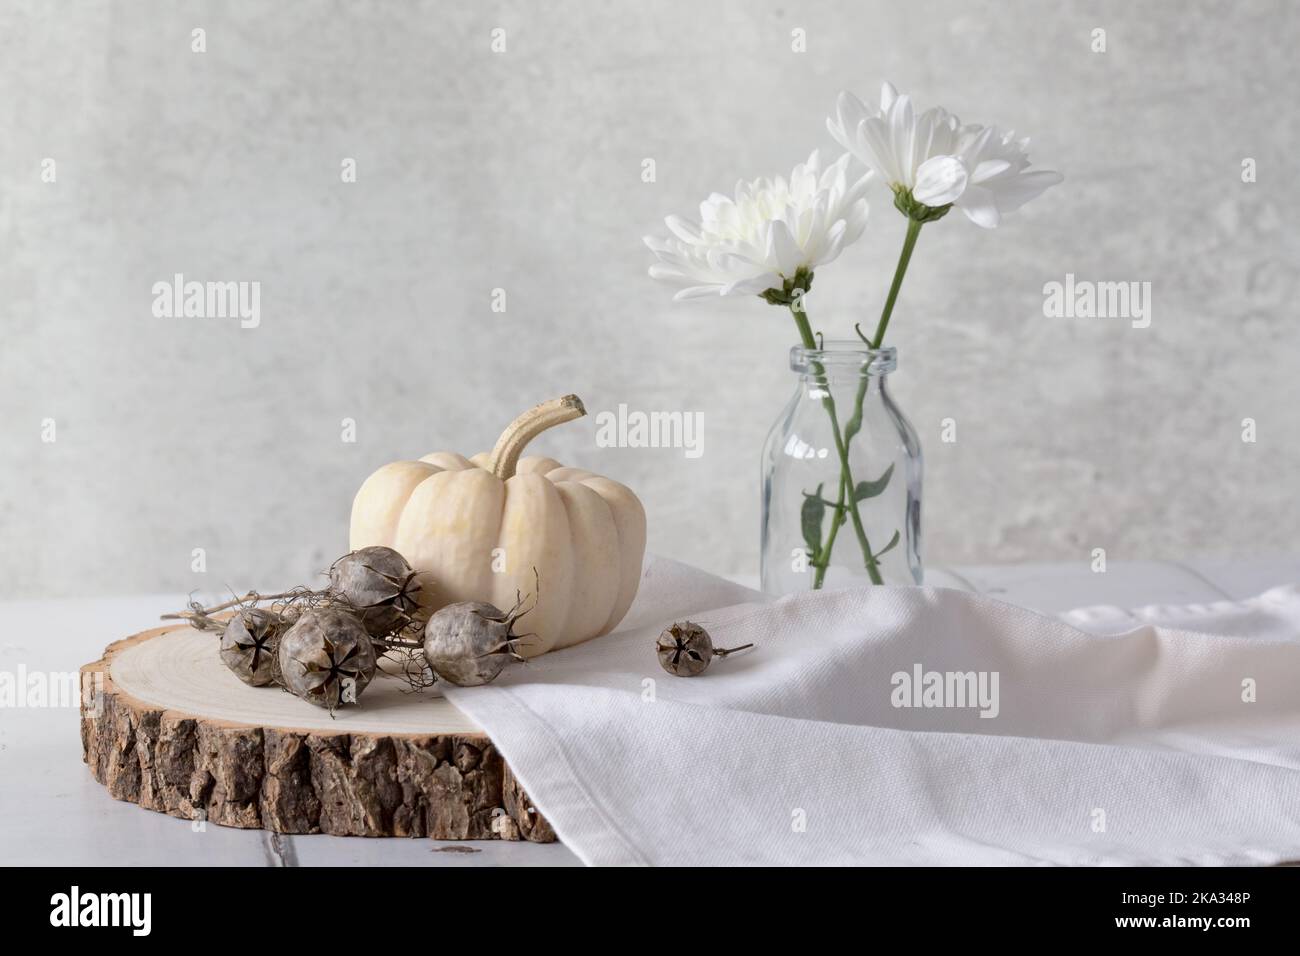 Citrouille bébé Boo Ghost sur bloc de bois avec graines de nigelle, serviette en lin et 2 chrysanthèmes blancs sur fond clair. Net, léger et aéré. Banque D'Images